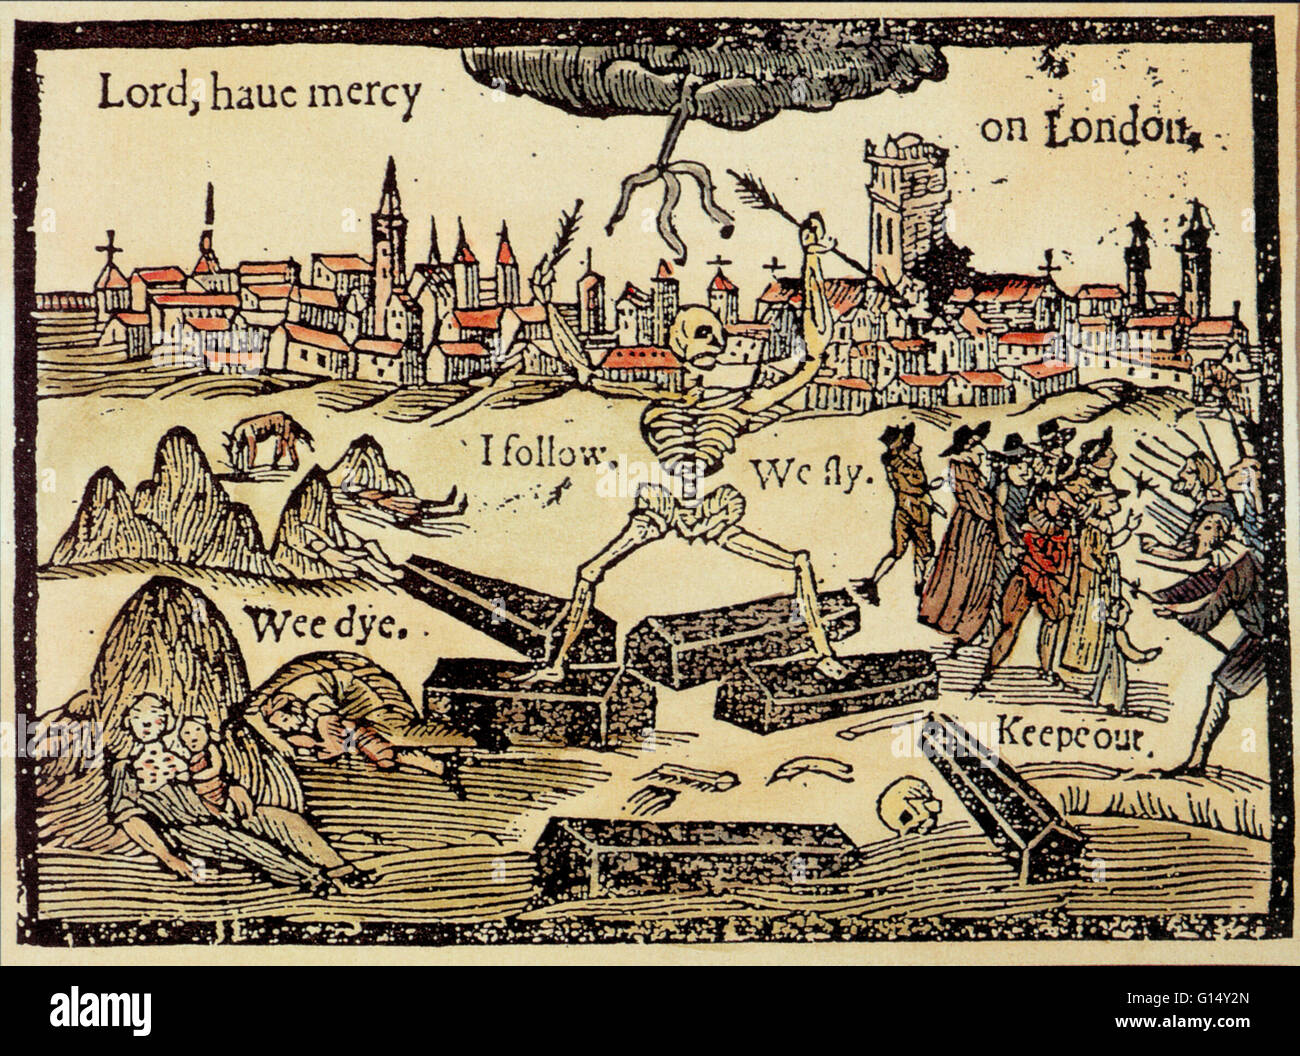 Triumphierende Tod jagt Londoner aus ihrer Stadt, aber Country-Folk (rechts), Angst vor der Krankheit, fahren sie zurück. Das Bild ist das Titel-Kunstwerk aus einem 17. Jahrhundert Broschüre über die Auswirkungen der Seuche auf London. Diese Broschüre, A-Rod für Run-Awayes, durch Stockfoto